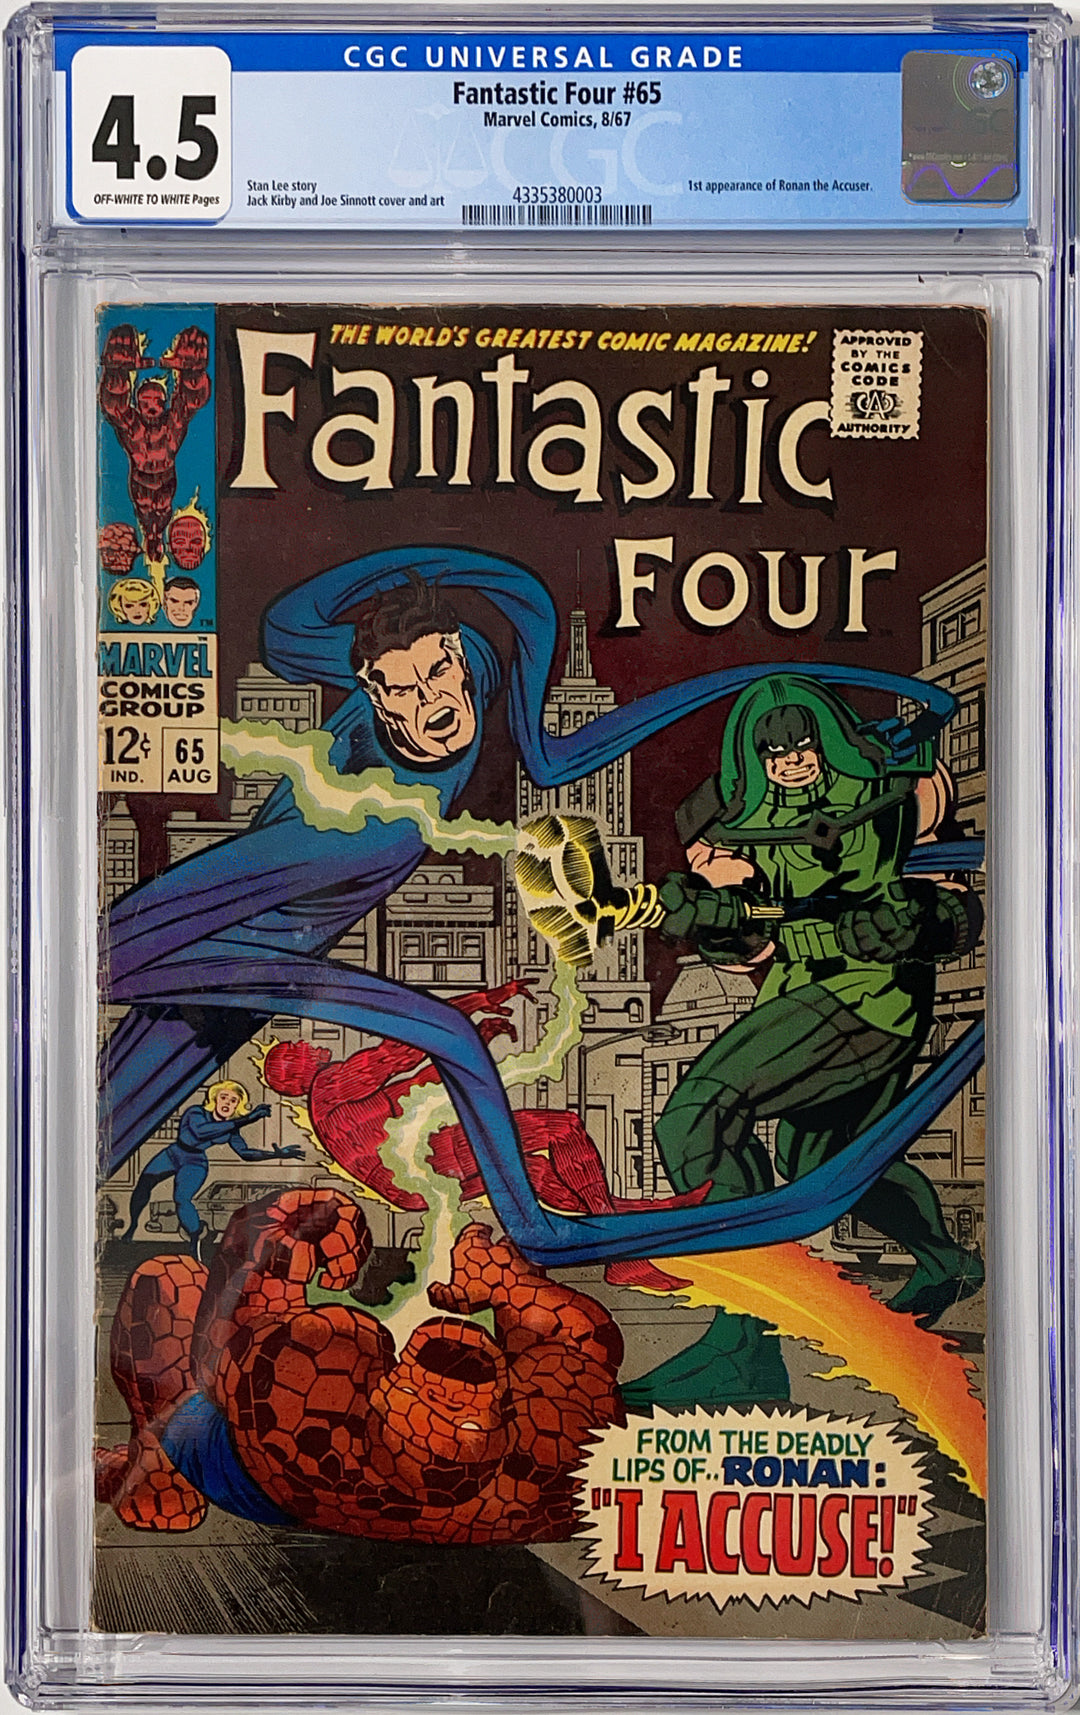 Fantastic Four, Vol. 1 #65 - CGC 4.5